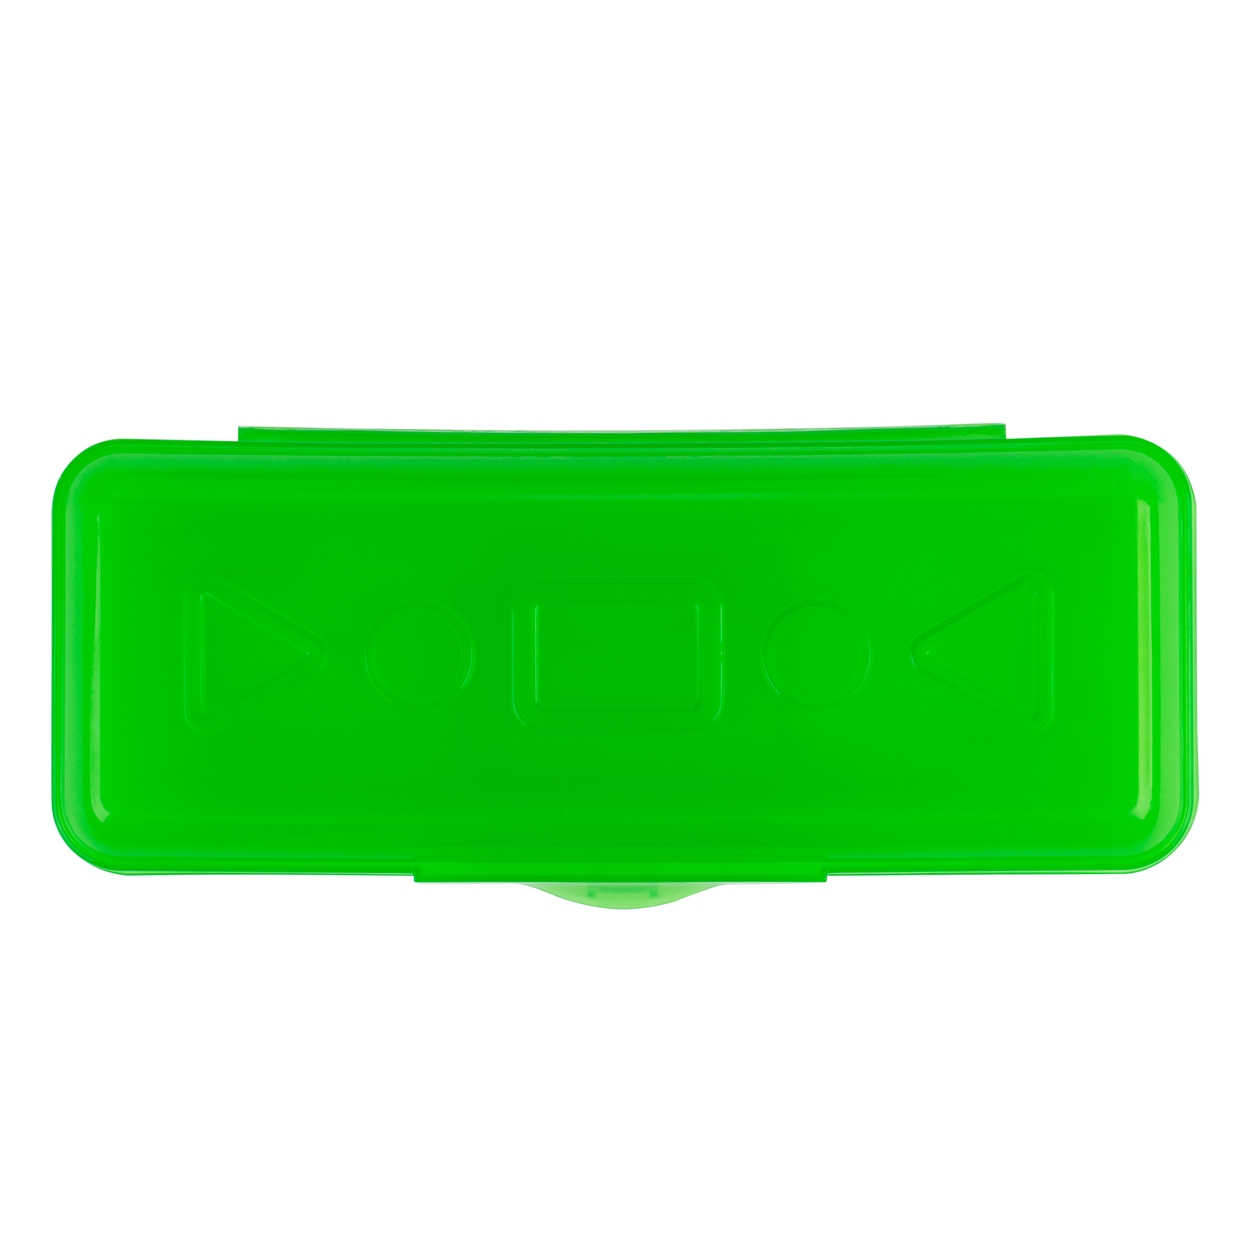 Пенал пластиковый ЦВЕТИК прозрачный зеленый по 76.00 руб от Невская палитра